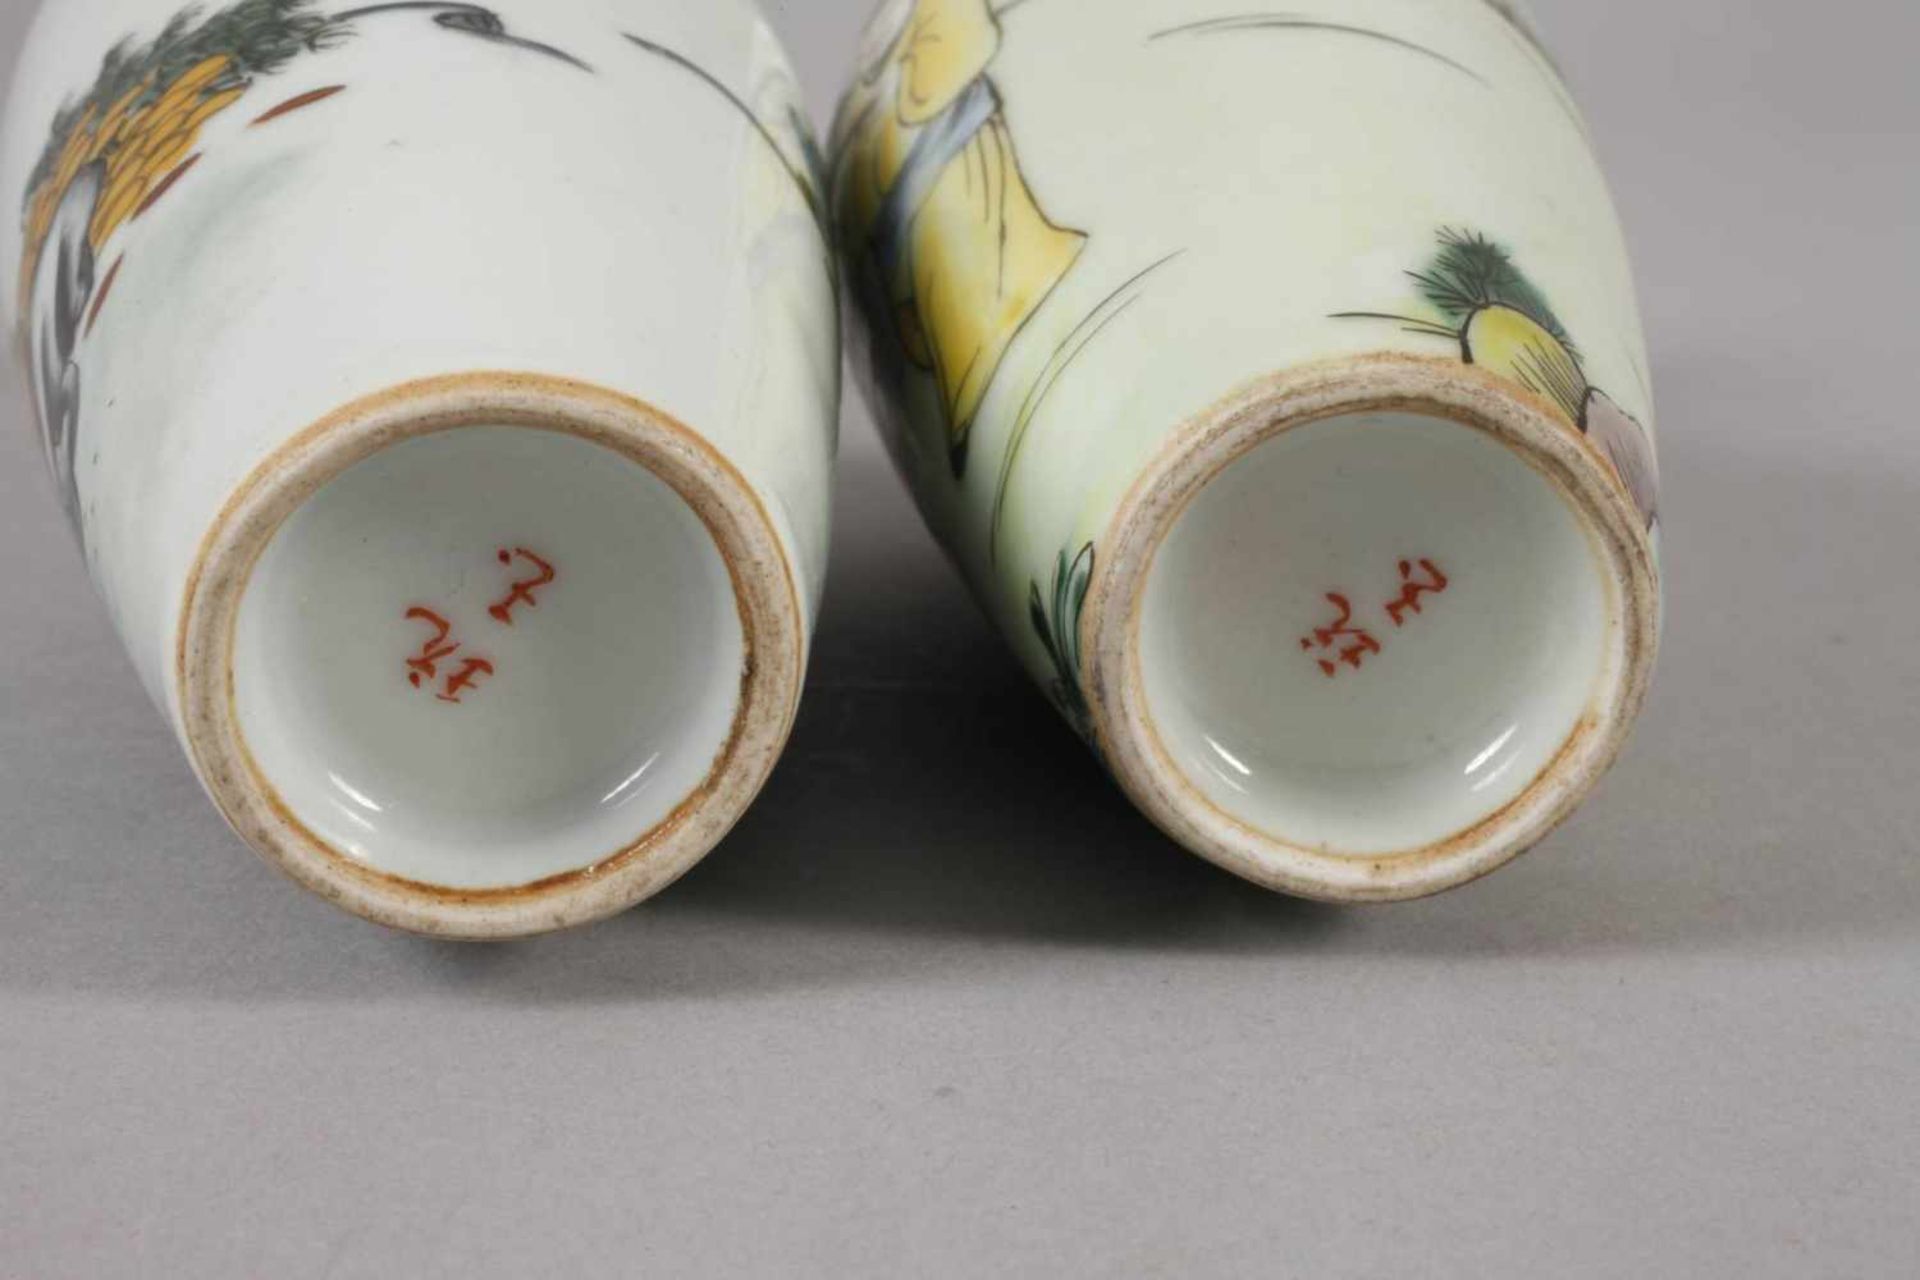 Sechs Vasen China1960er bis 1970er Jahre, gemarkt und signiert, Weißporzellan in polychromer - Bild 10 aus 12